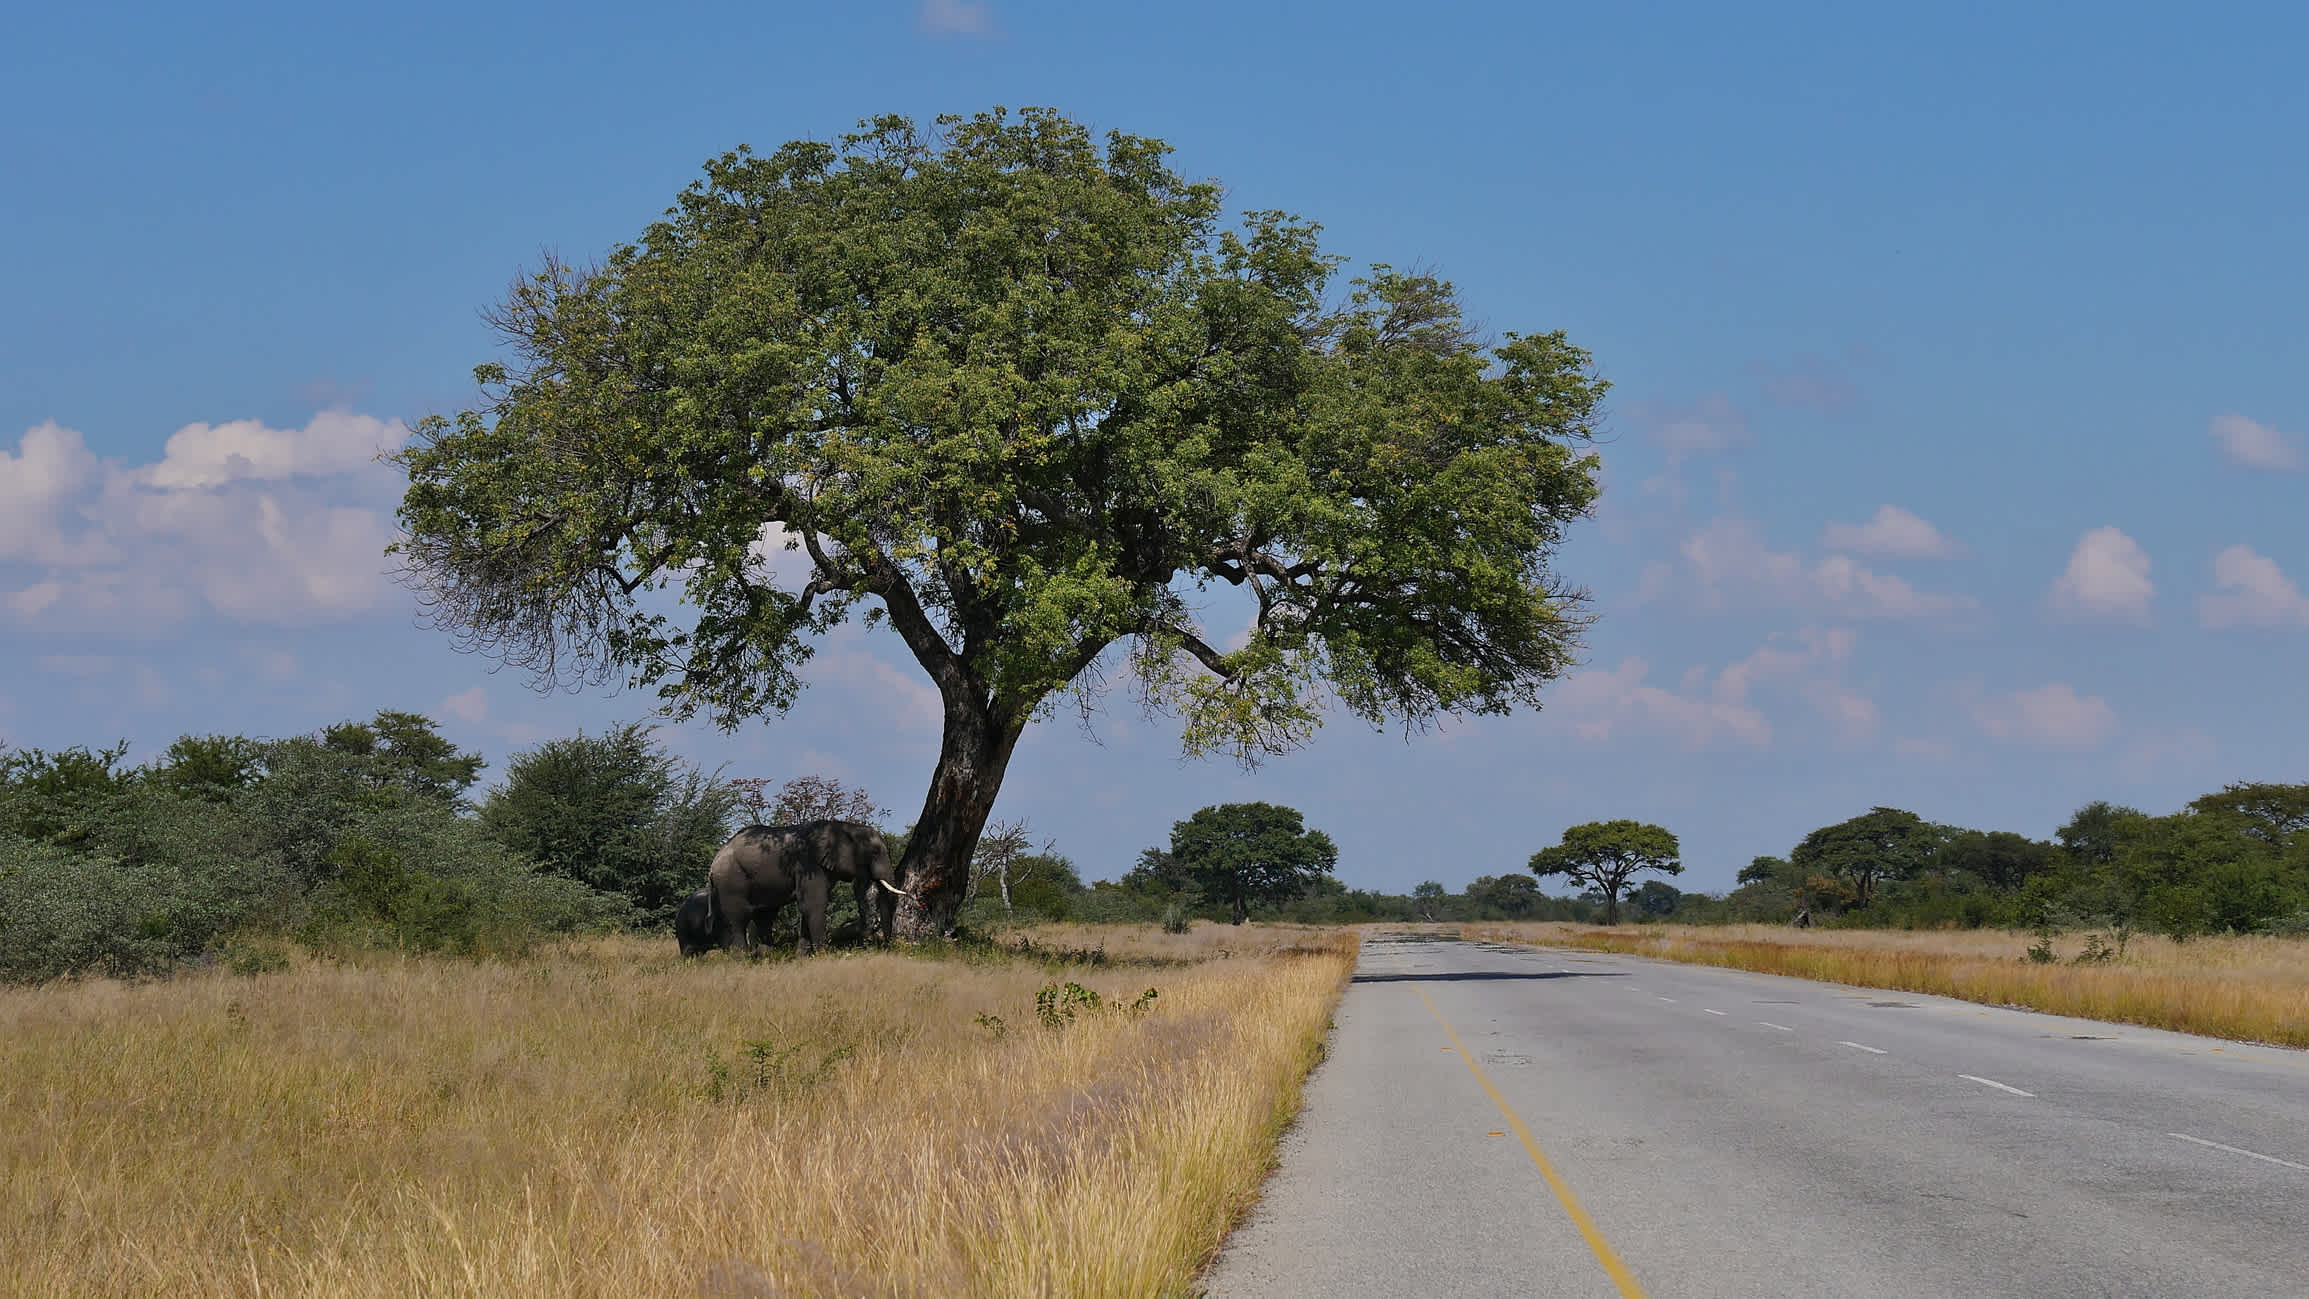 Des éléphants d'Afrique broutent sous un grand arbre près de la route principale entre Kasane et Nata dans le désert du Kalahari au Botswana